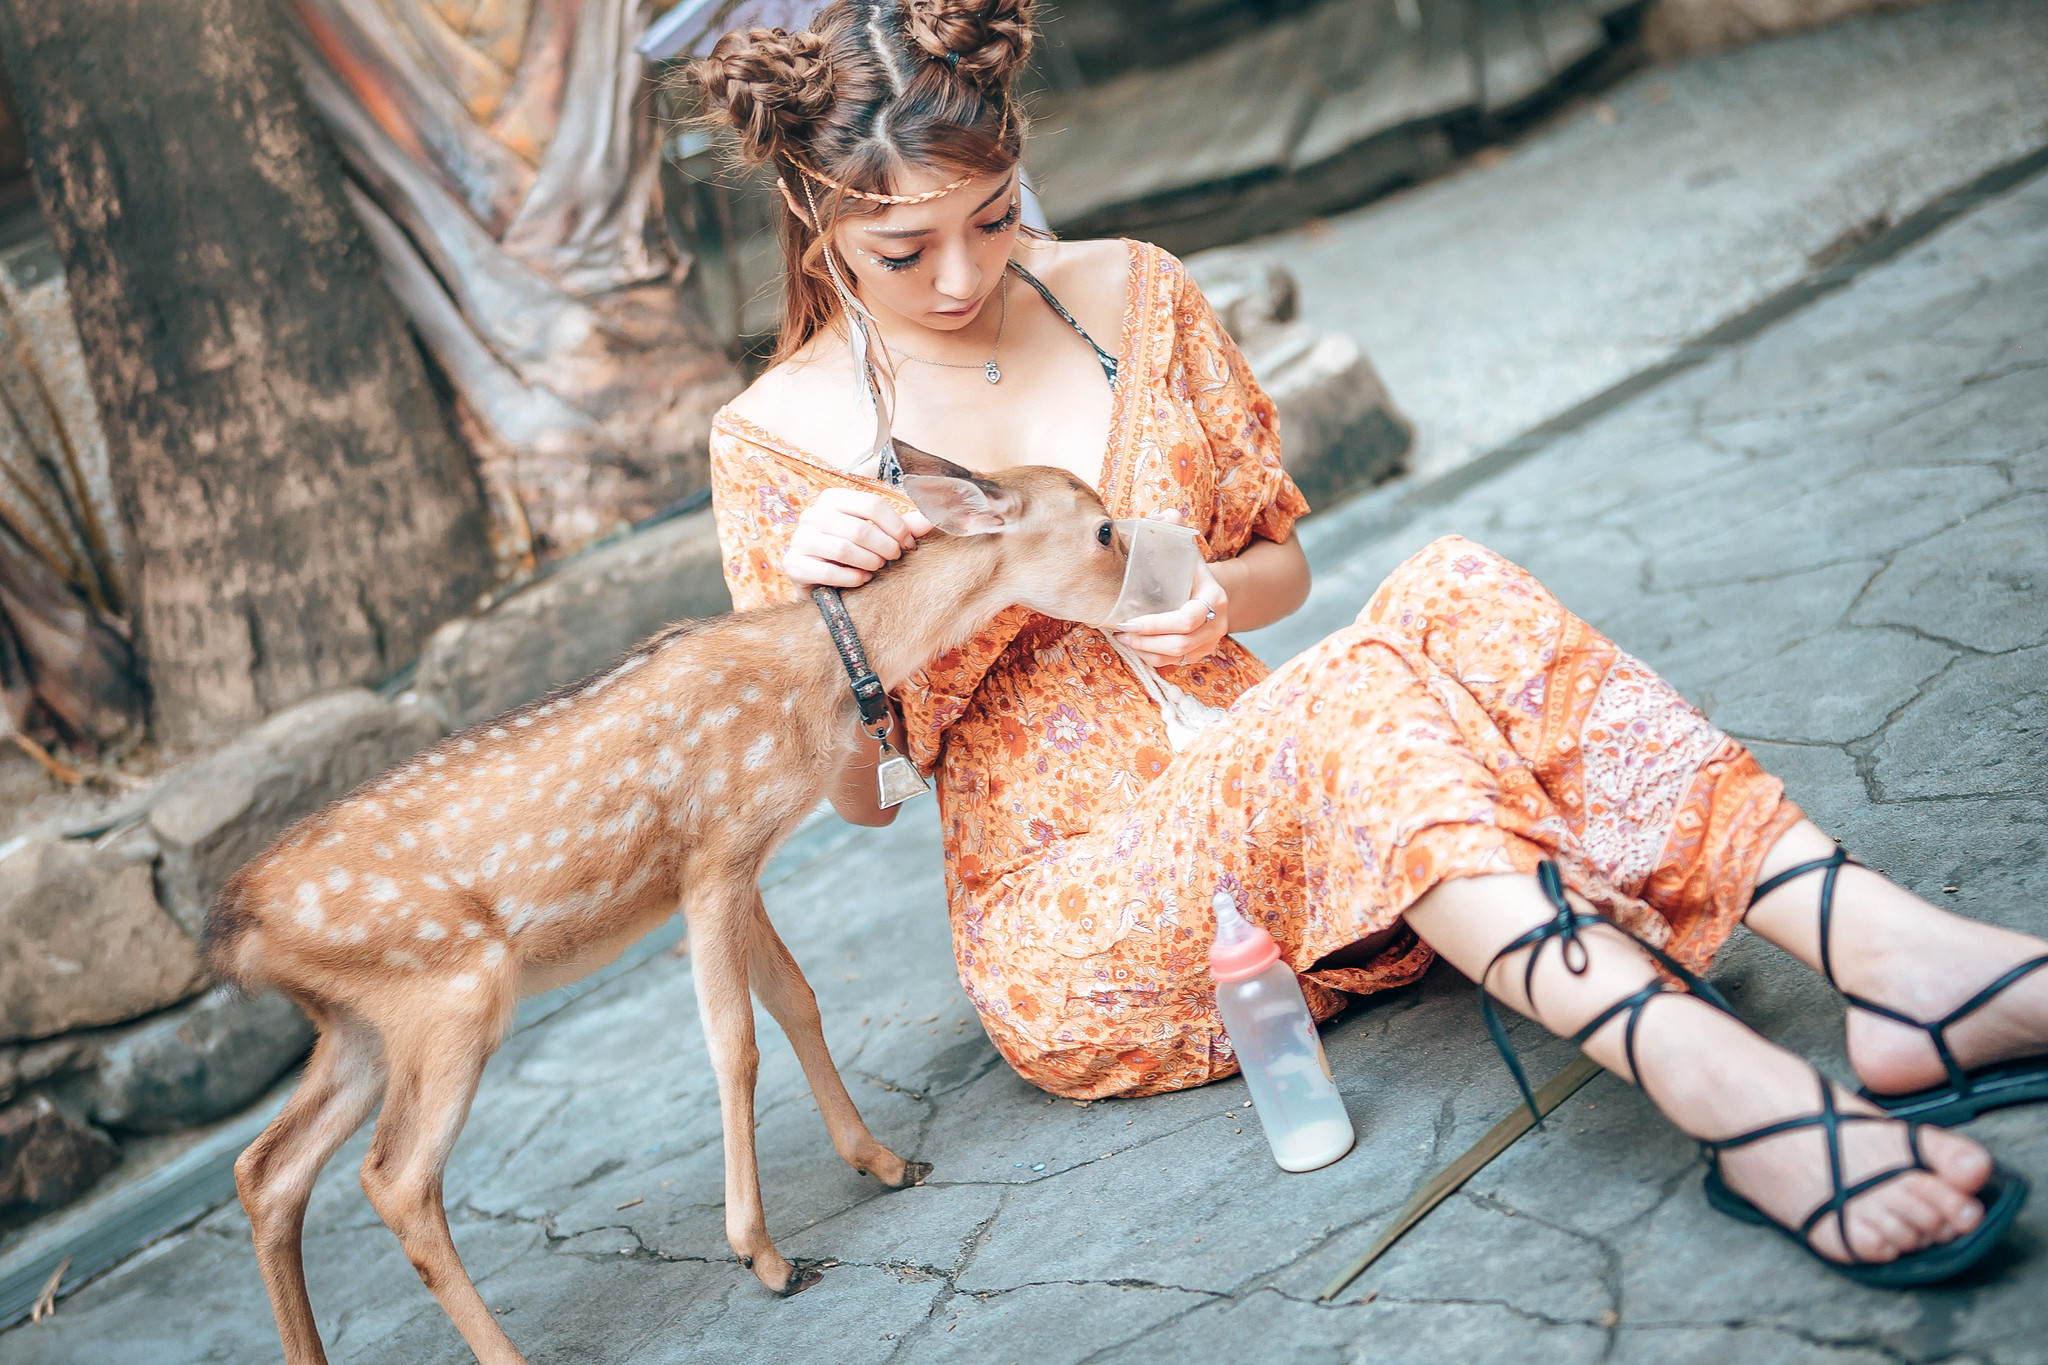 People 2048x1365 animals mammals deer women model Asian food sitting women outdoors outdoors necklace dress orange dress Nara Park feet